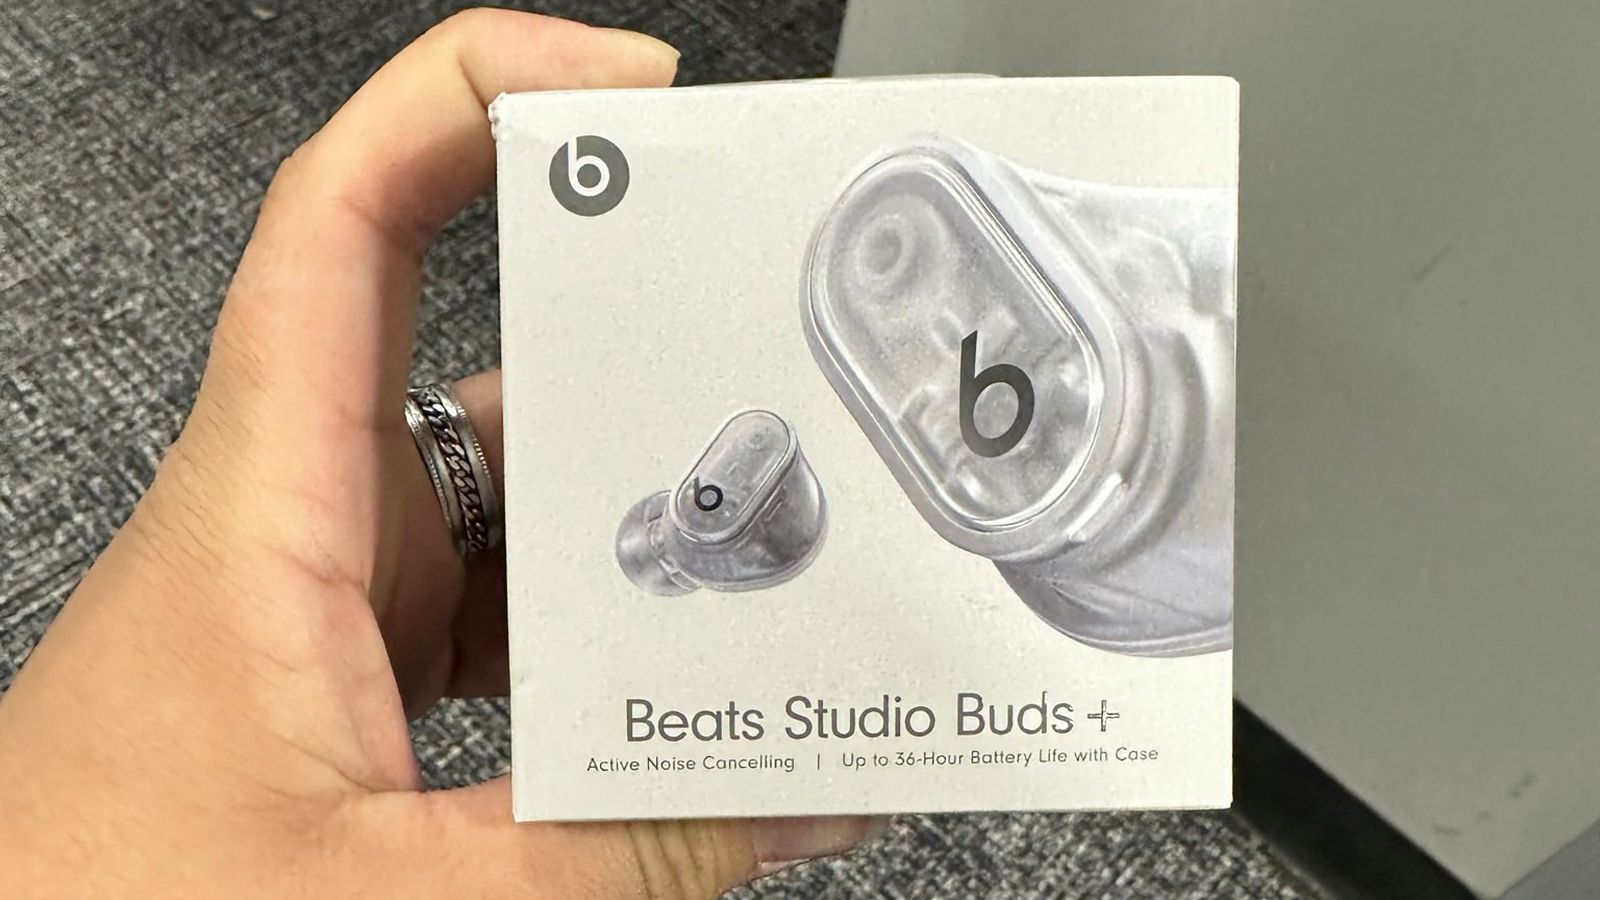 Słuchawki Beats Studio Buds+ z nowym przezroczystym designem zauważone w Best Buy